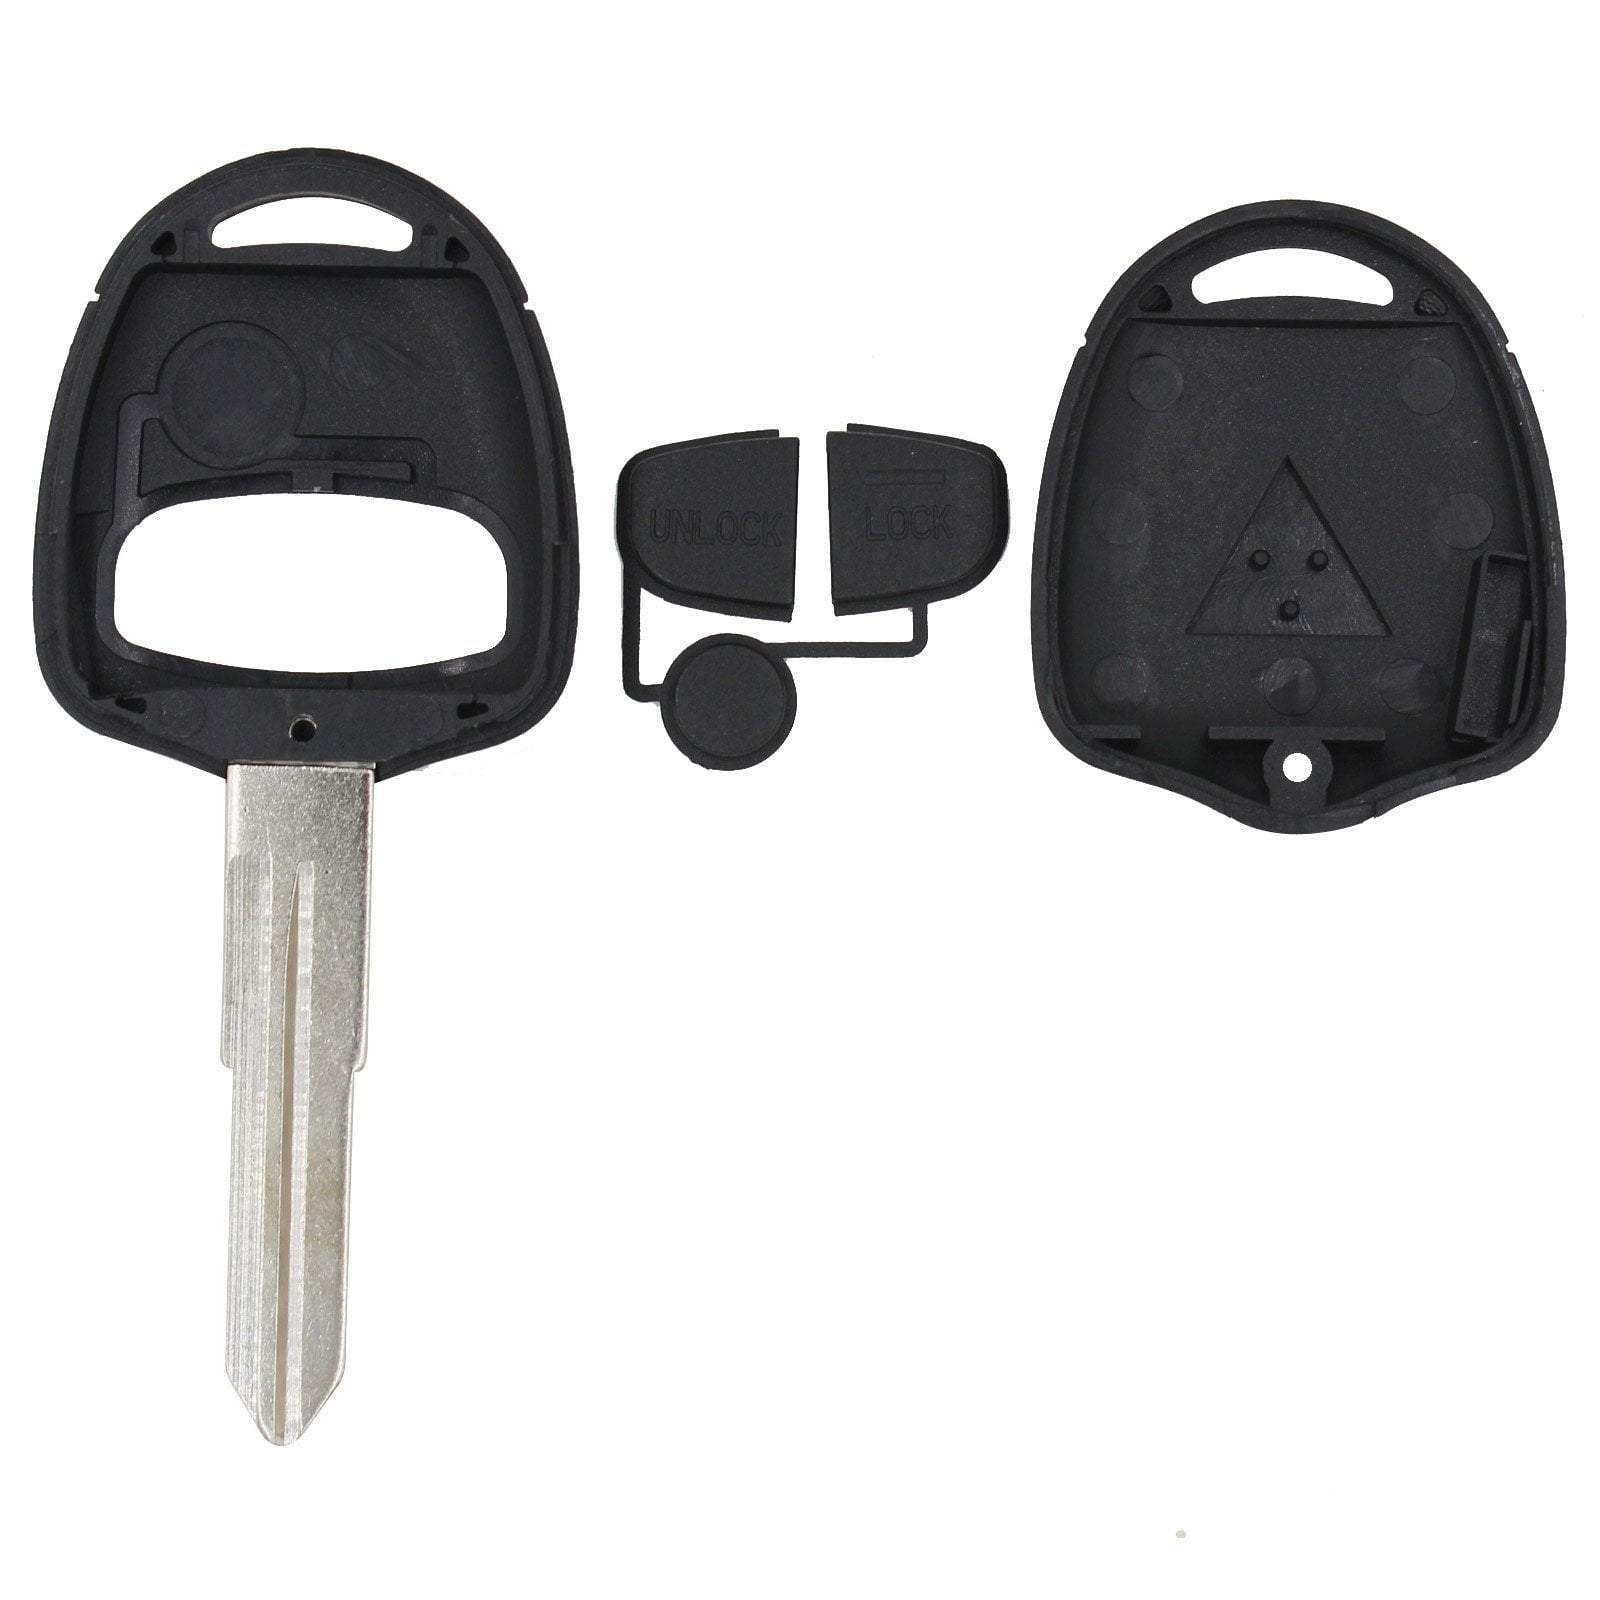 Fekete színű, 2 gombos Mitsubishi kulcs, kulcsház szétszedve